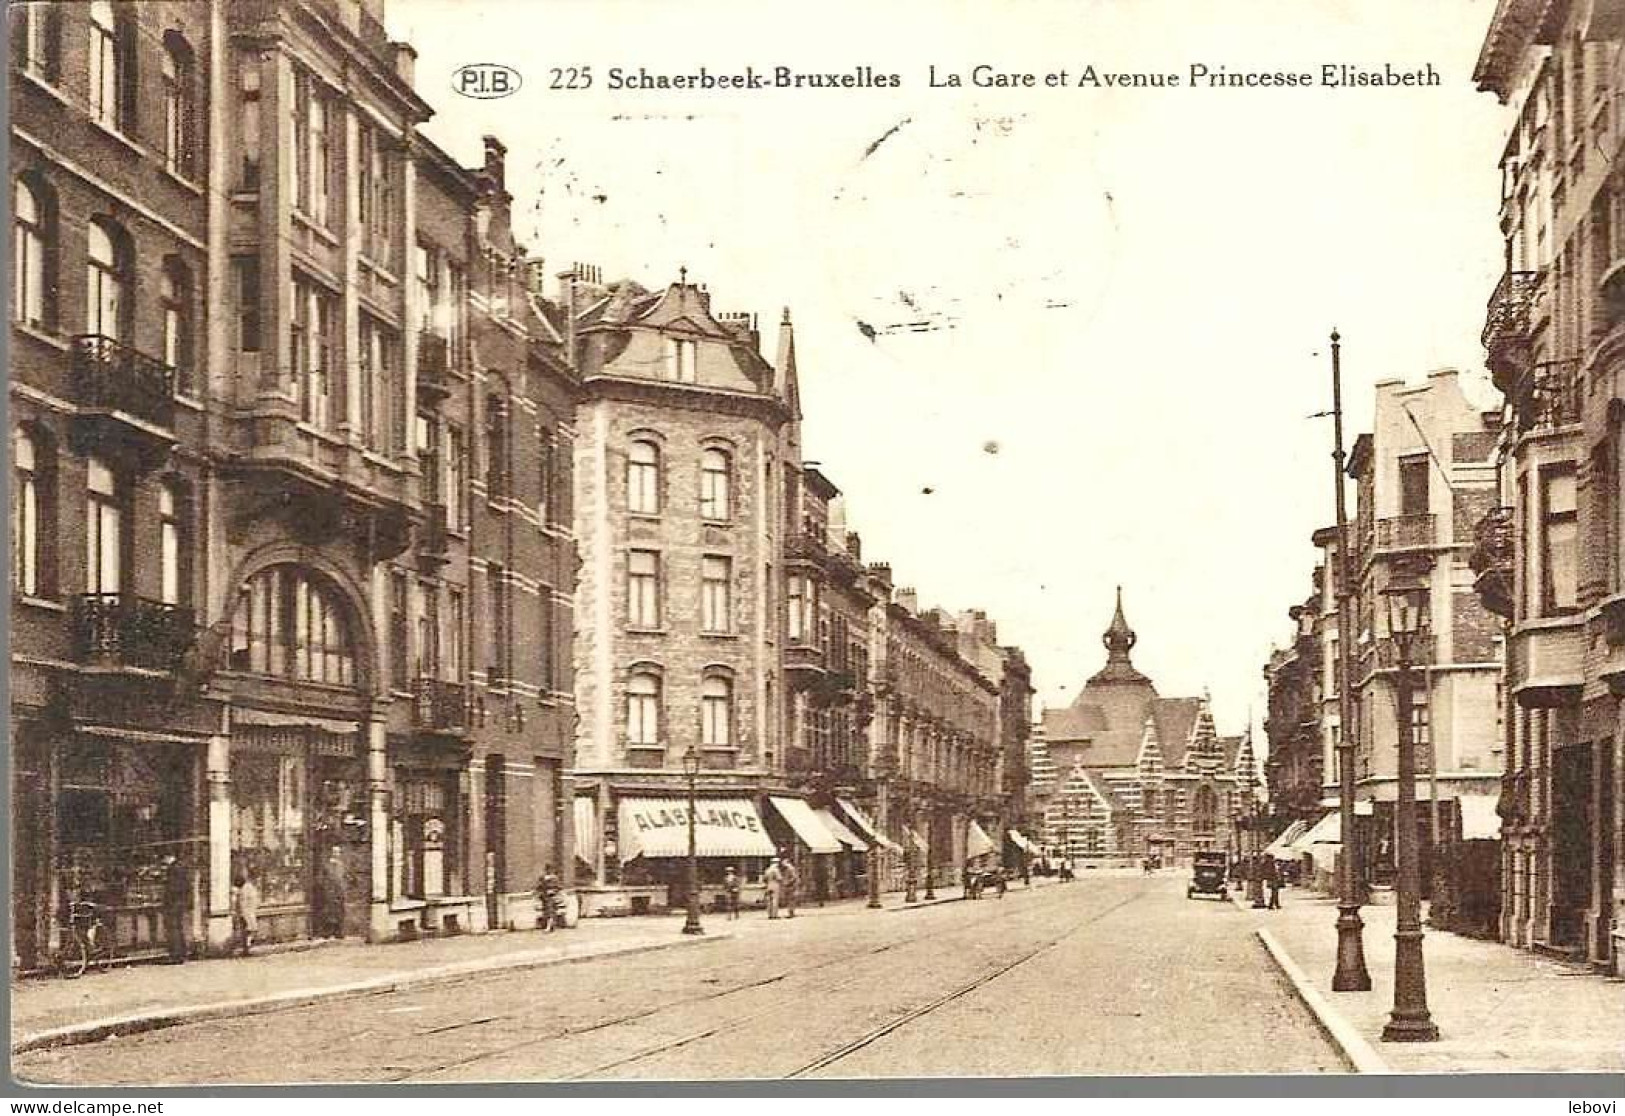 SCHAERBEEK « La Gare Et Avenue Princesse Elisabeth » - Ed. P. I. B. (1932) - Schaerbeek - Schaarbeek